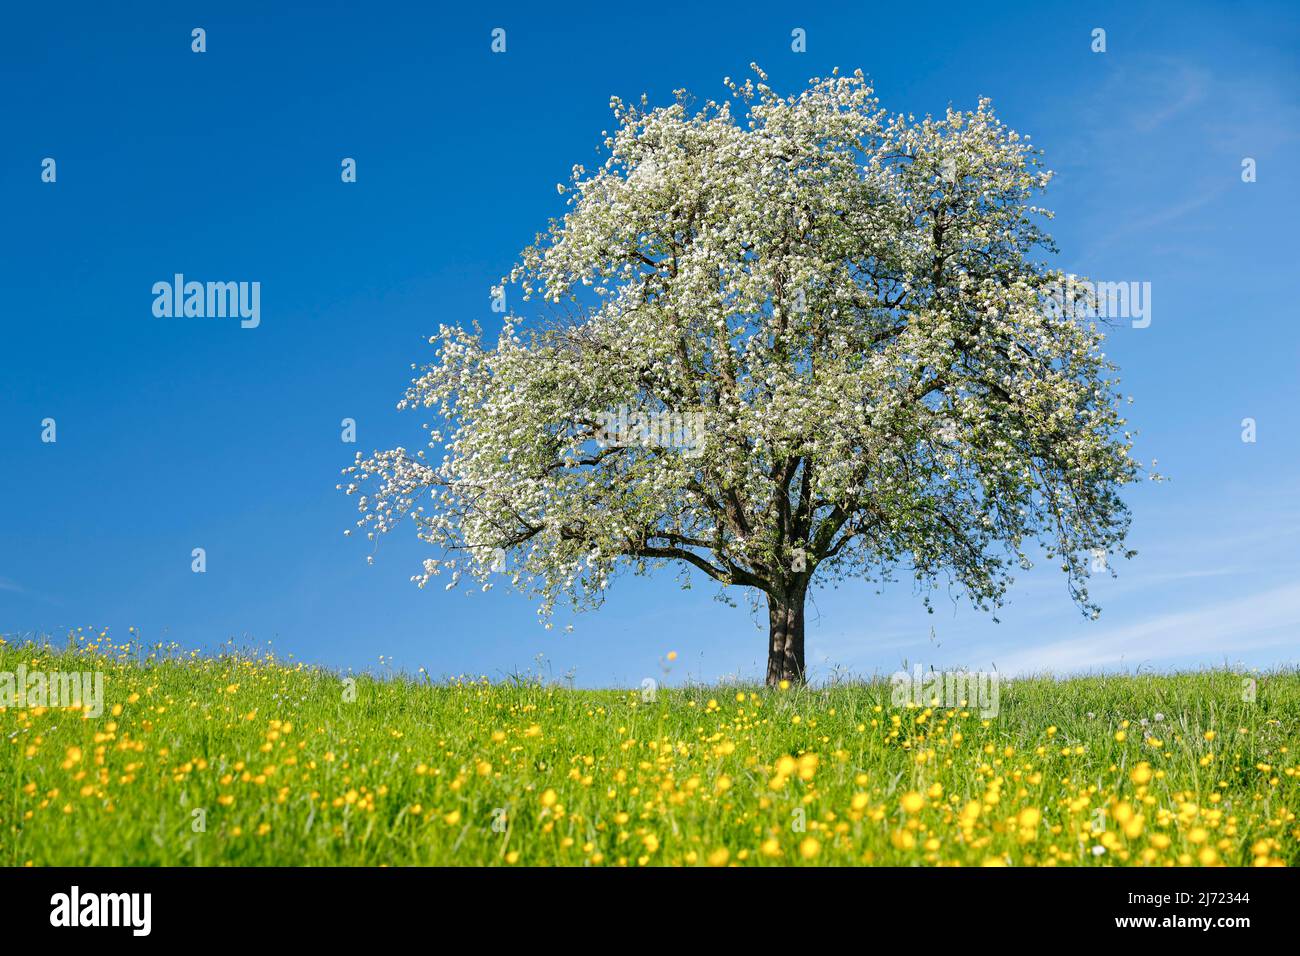 Alleinstehender, bluehender Birnbaum auf bluehender Blumenwiese, bei Hombrechtikon im Zuercher Oberland, Schweiz Stock Photo